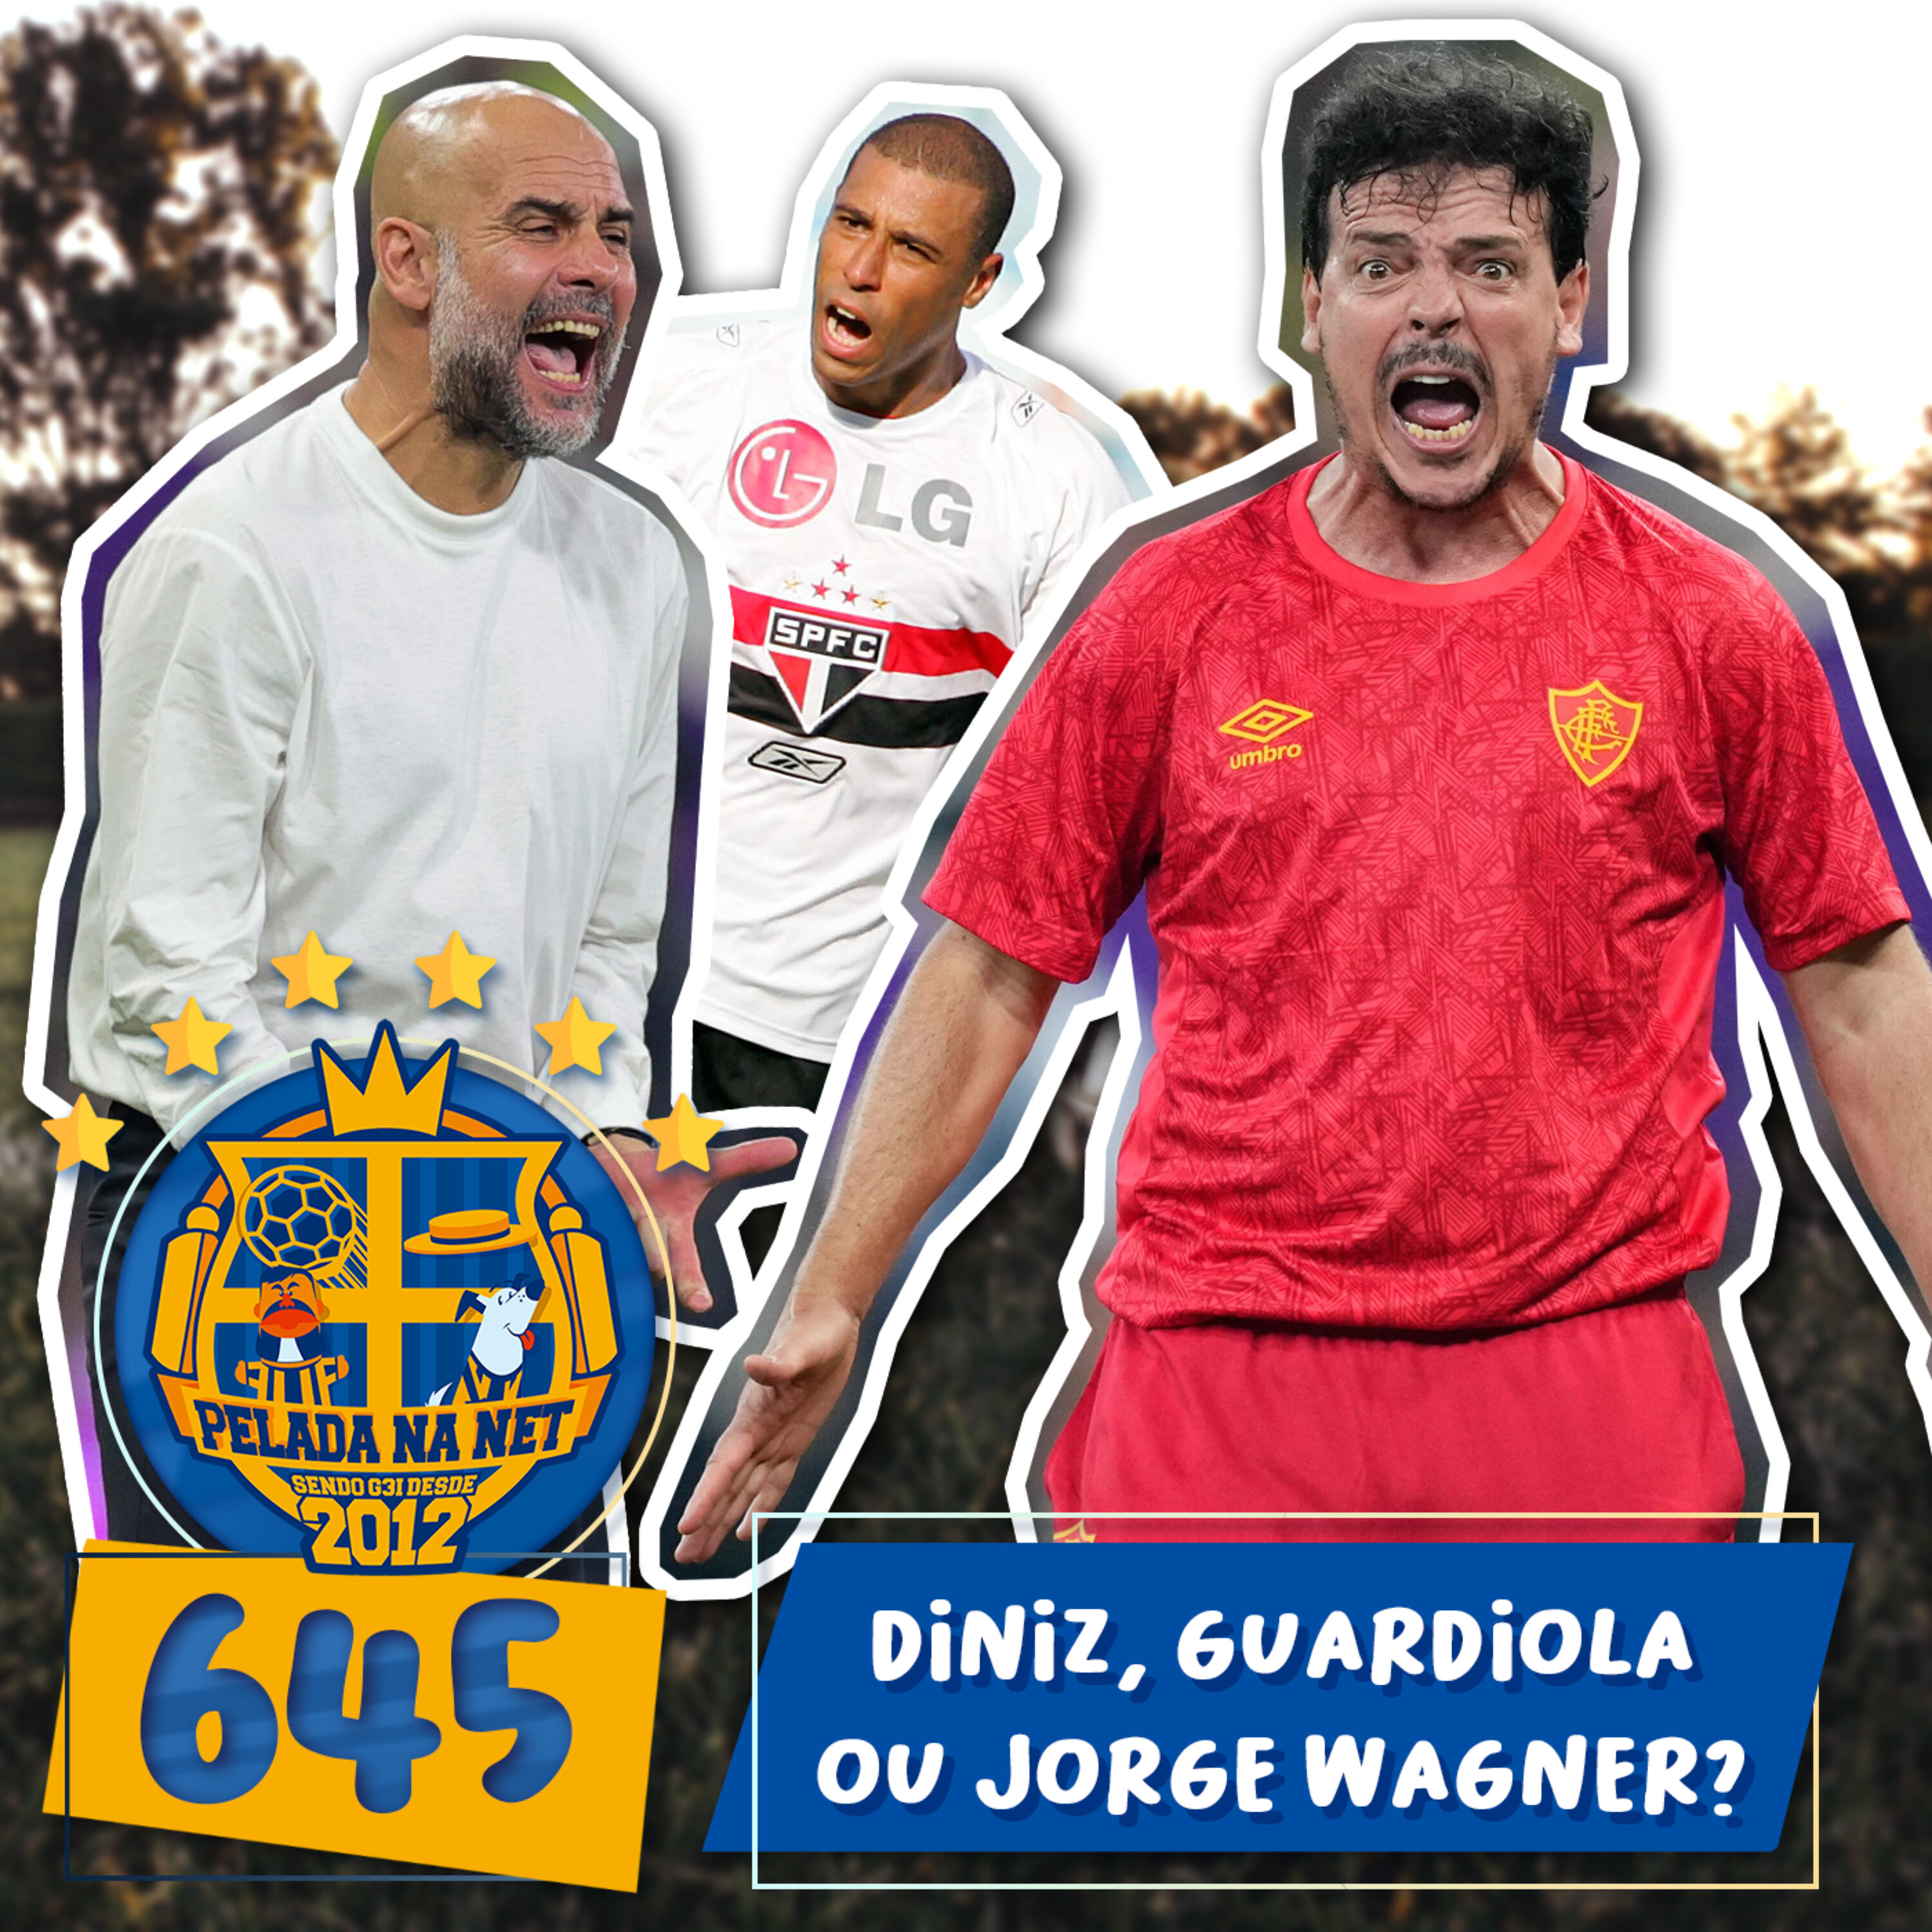 Pelada na Net #645 - Diniz, Guardiola Ou Jorge Wagner?